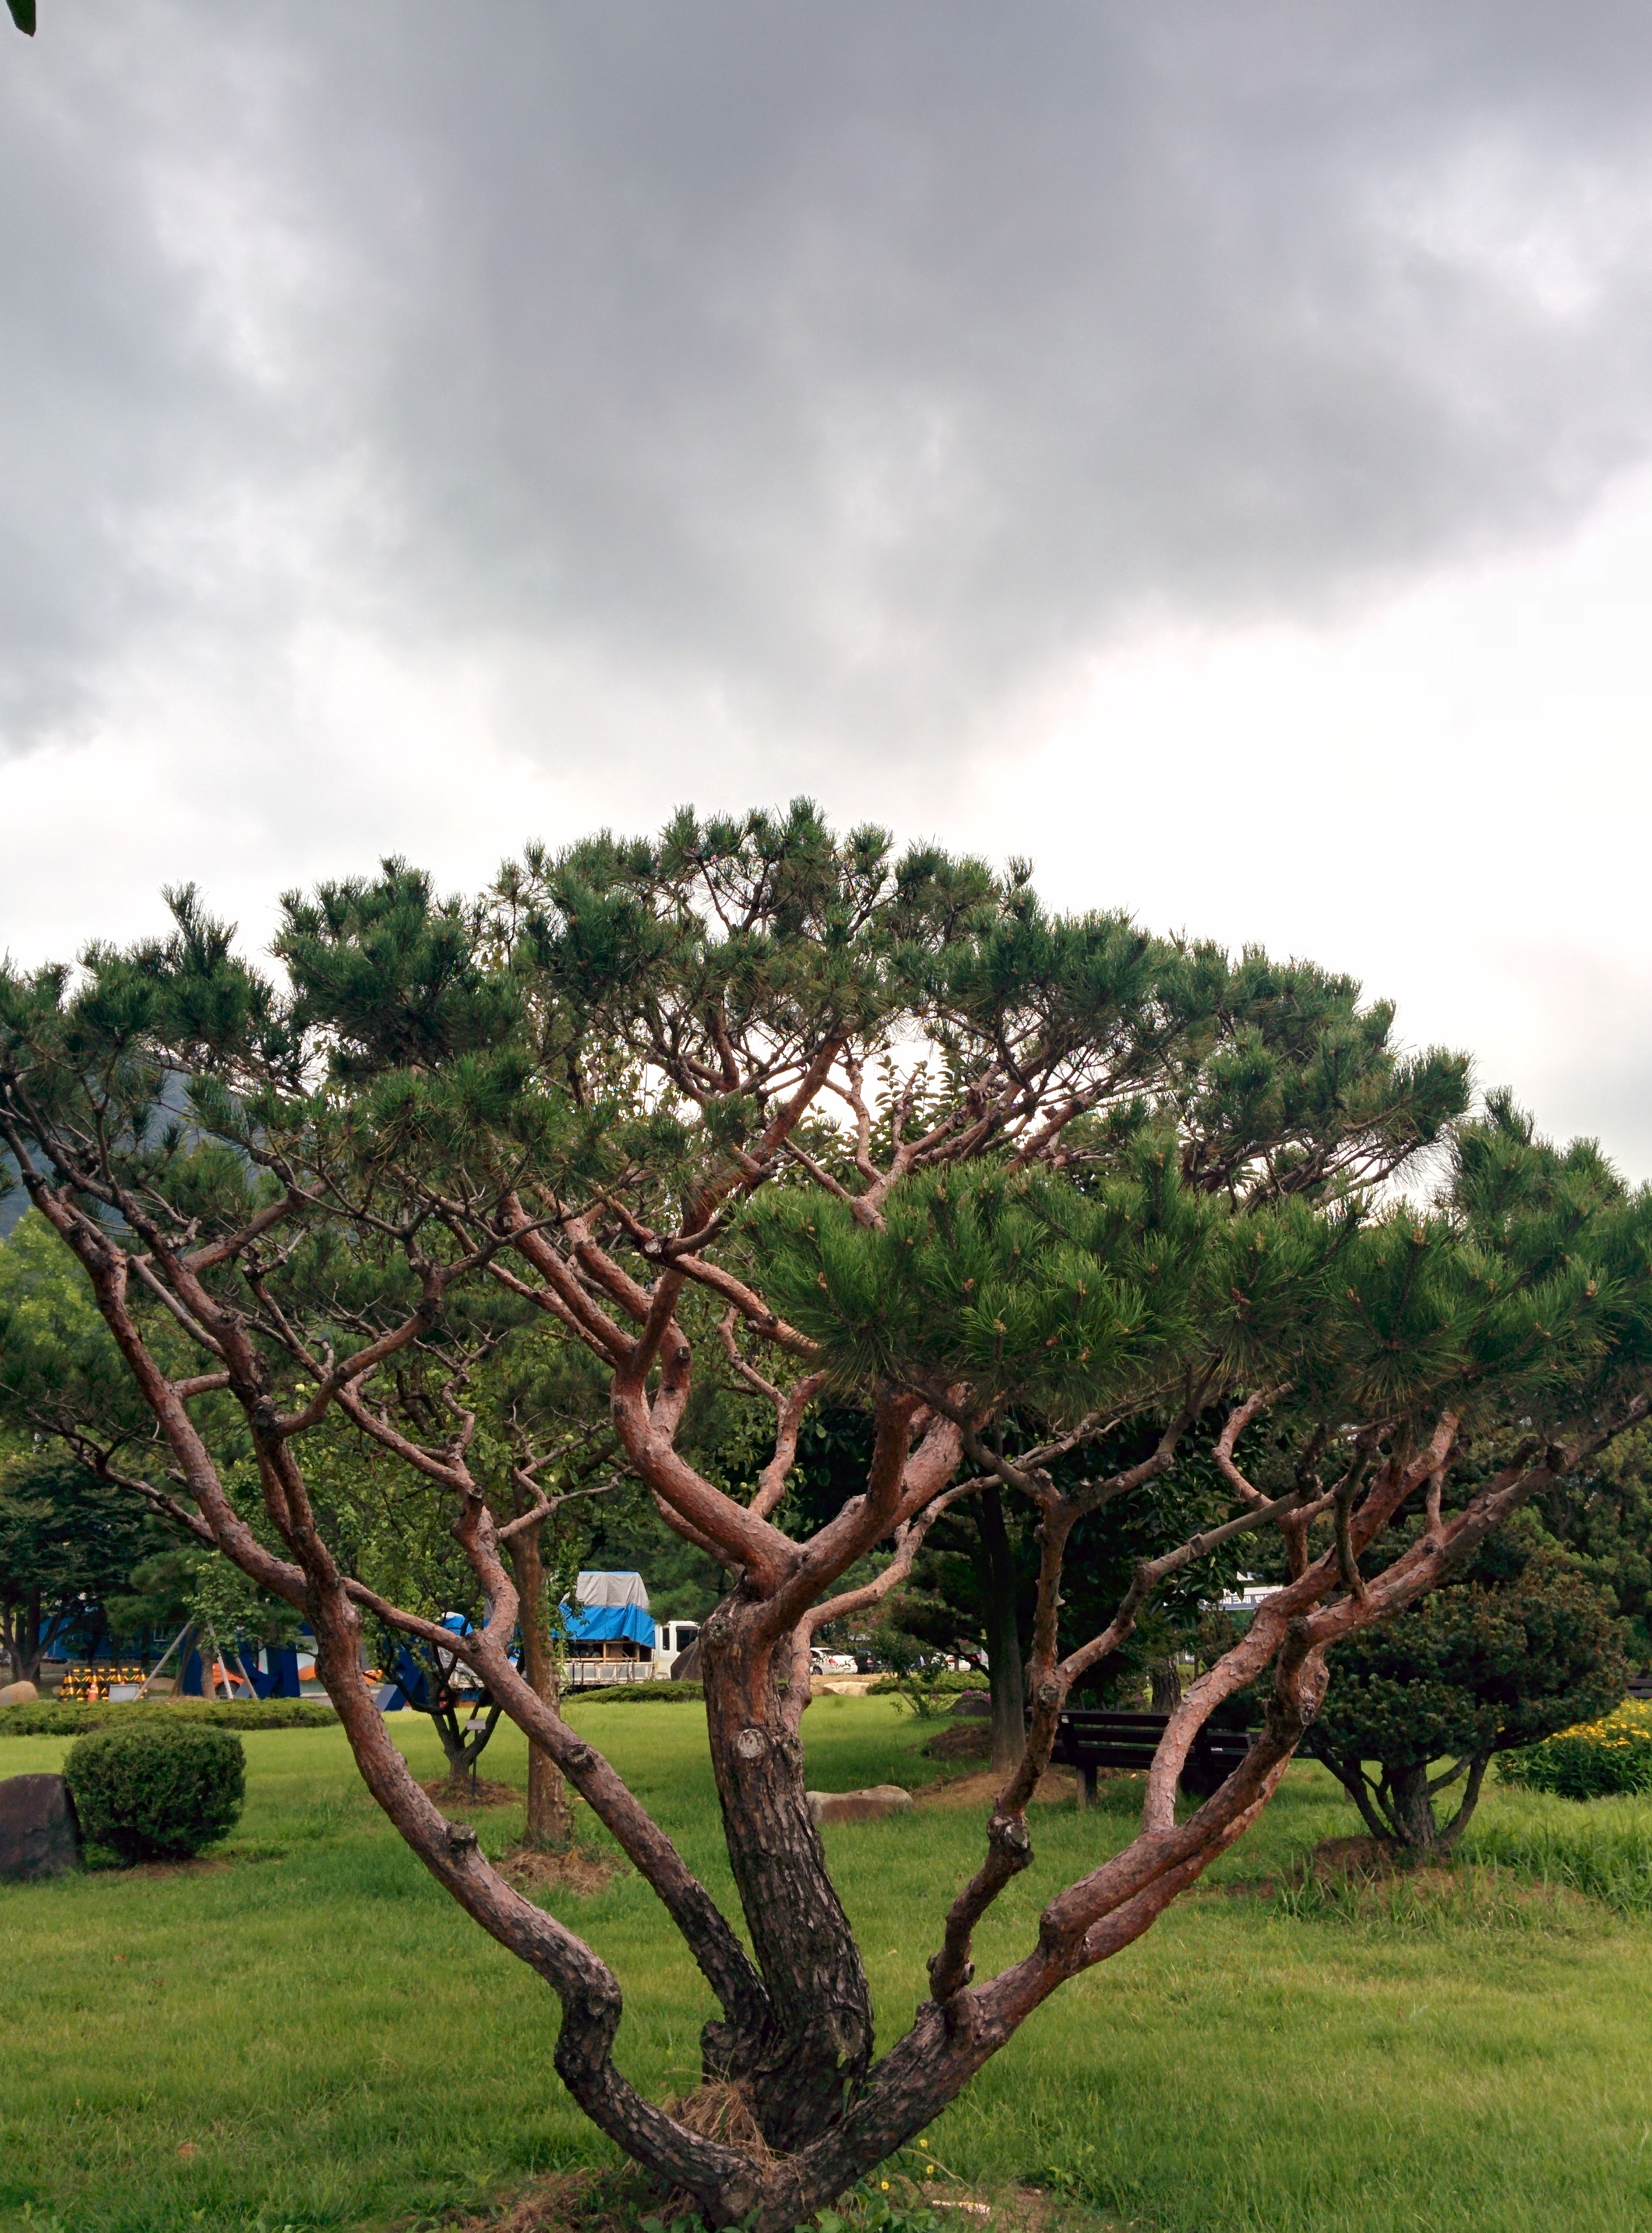 IMG_20150902_095435.jpg 전기연구원의 분재 소나무 (HDR+사진, 일반사진 비교)